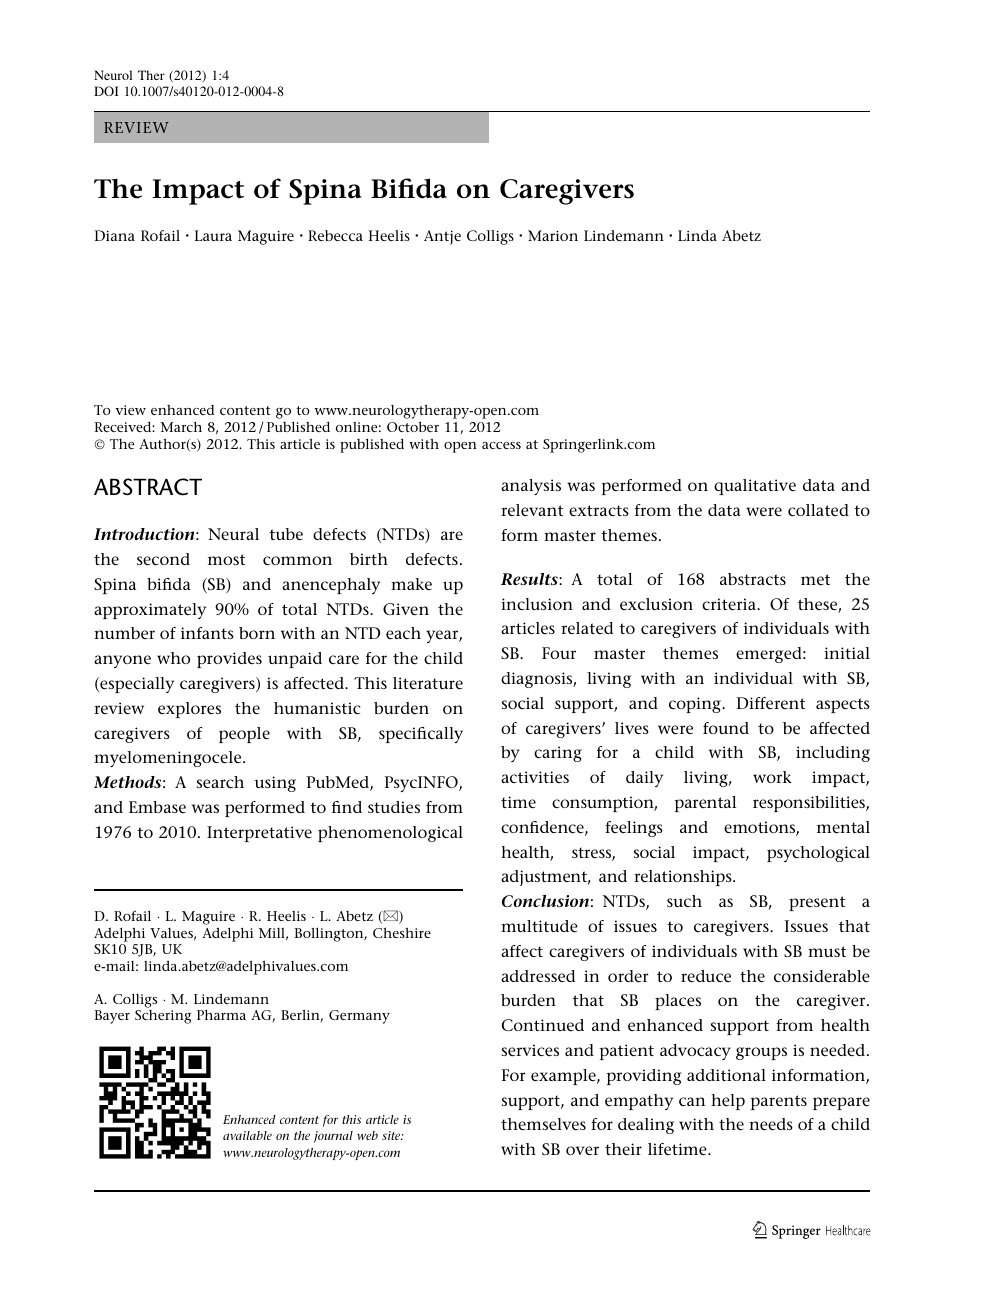 spina bifida research paper